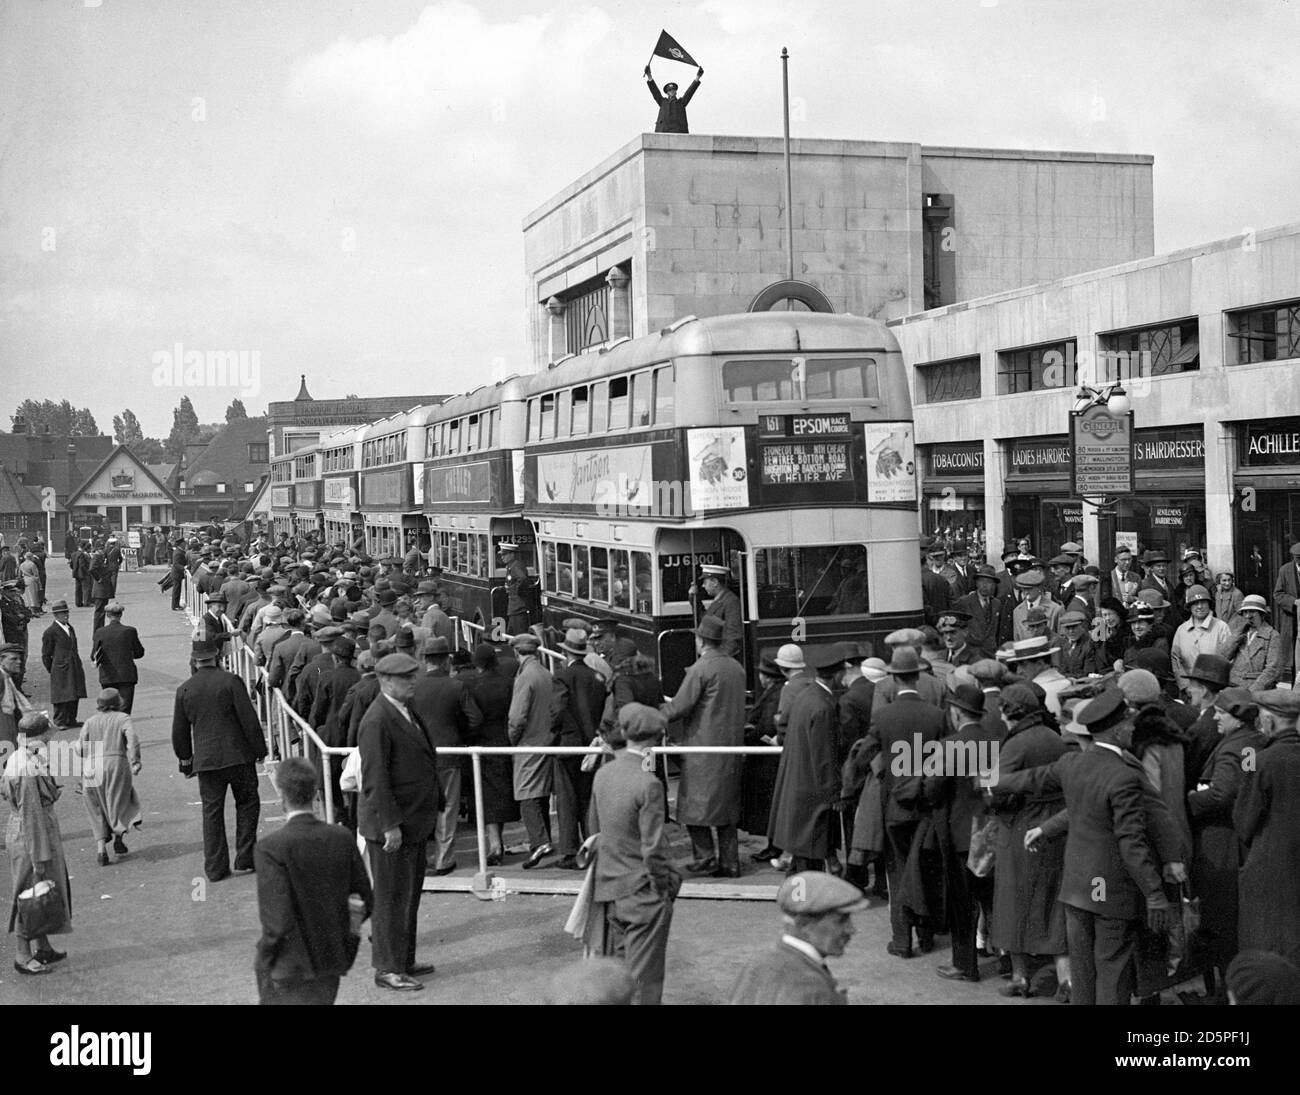 Un régulateur de la circulation fonctionne depuis le sommet de la station de métro Morden tandis que les foules quittent le Derby d'Epsom. Banque D'Images